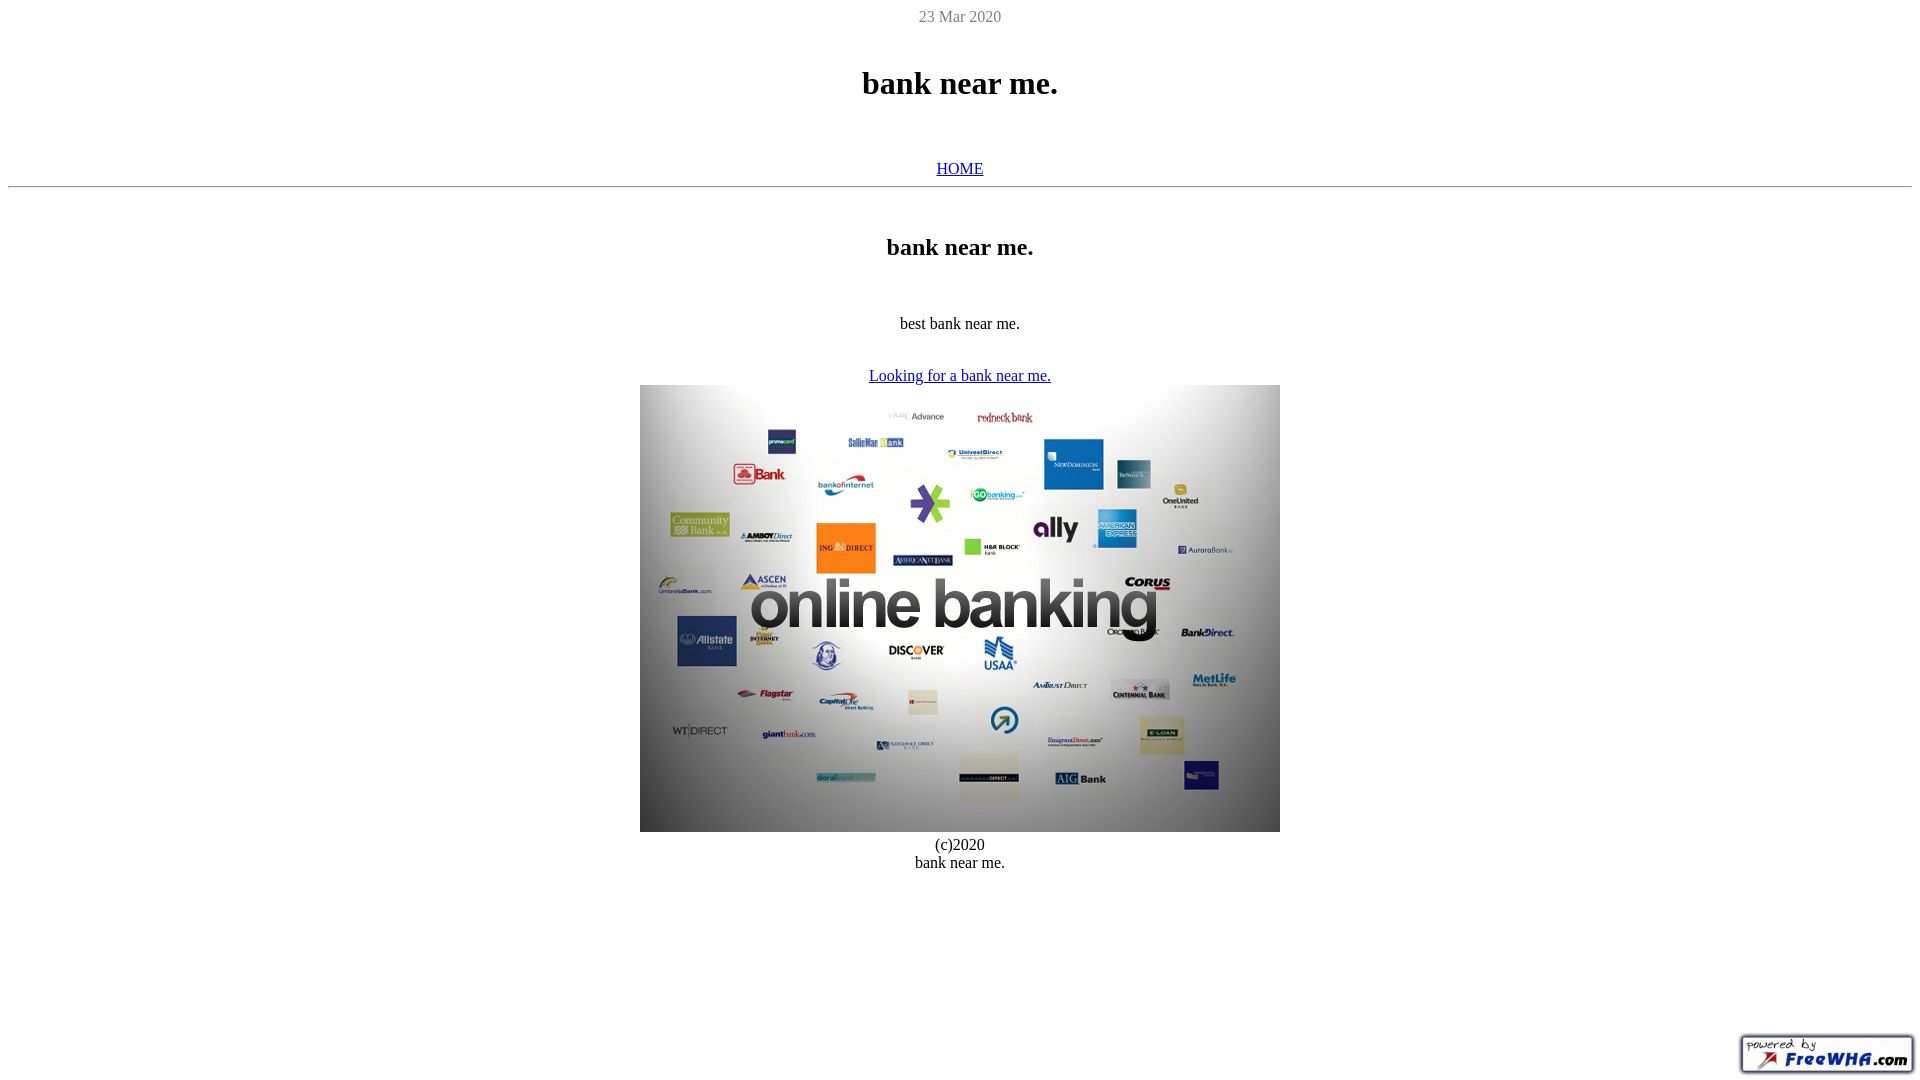 Stato del sito web banknearme.ueuo.com è   ONLINE